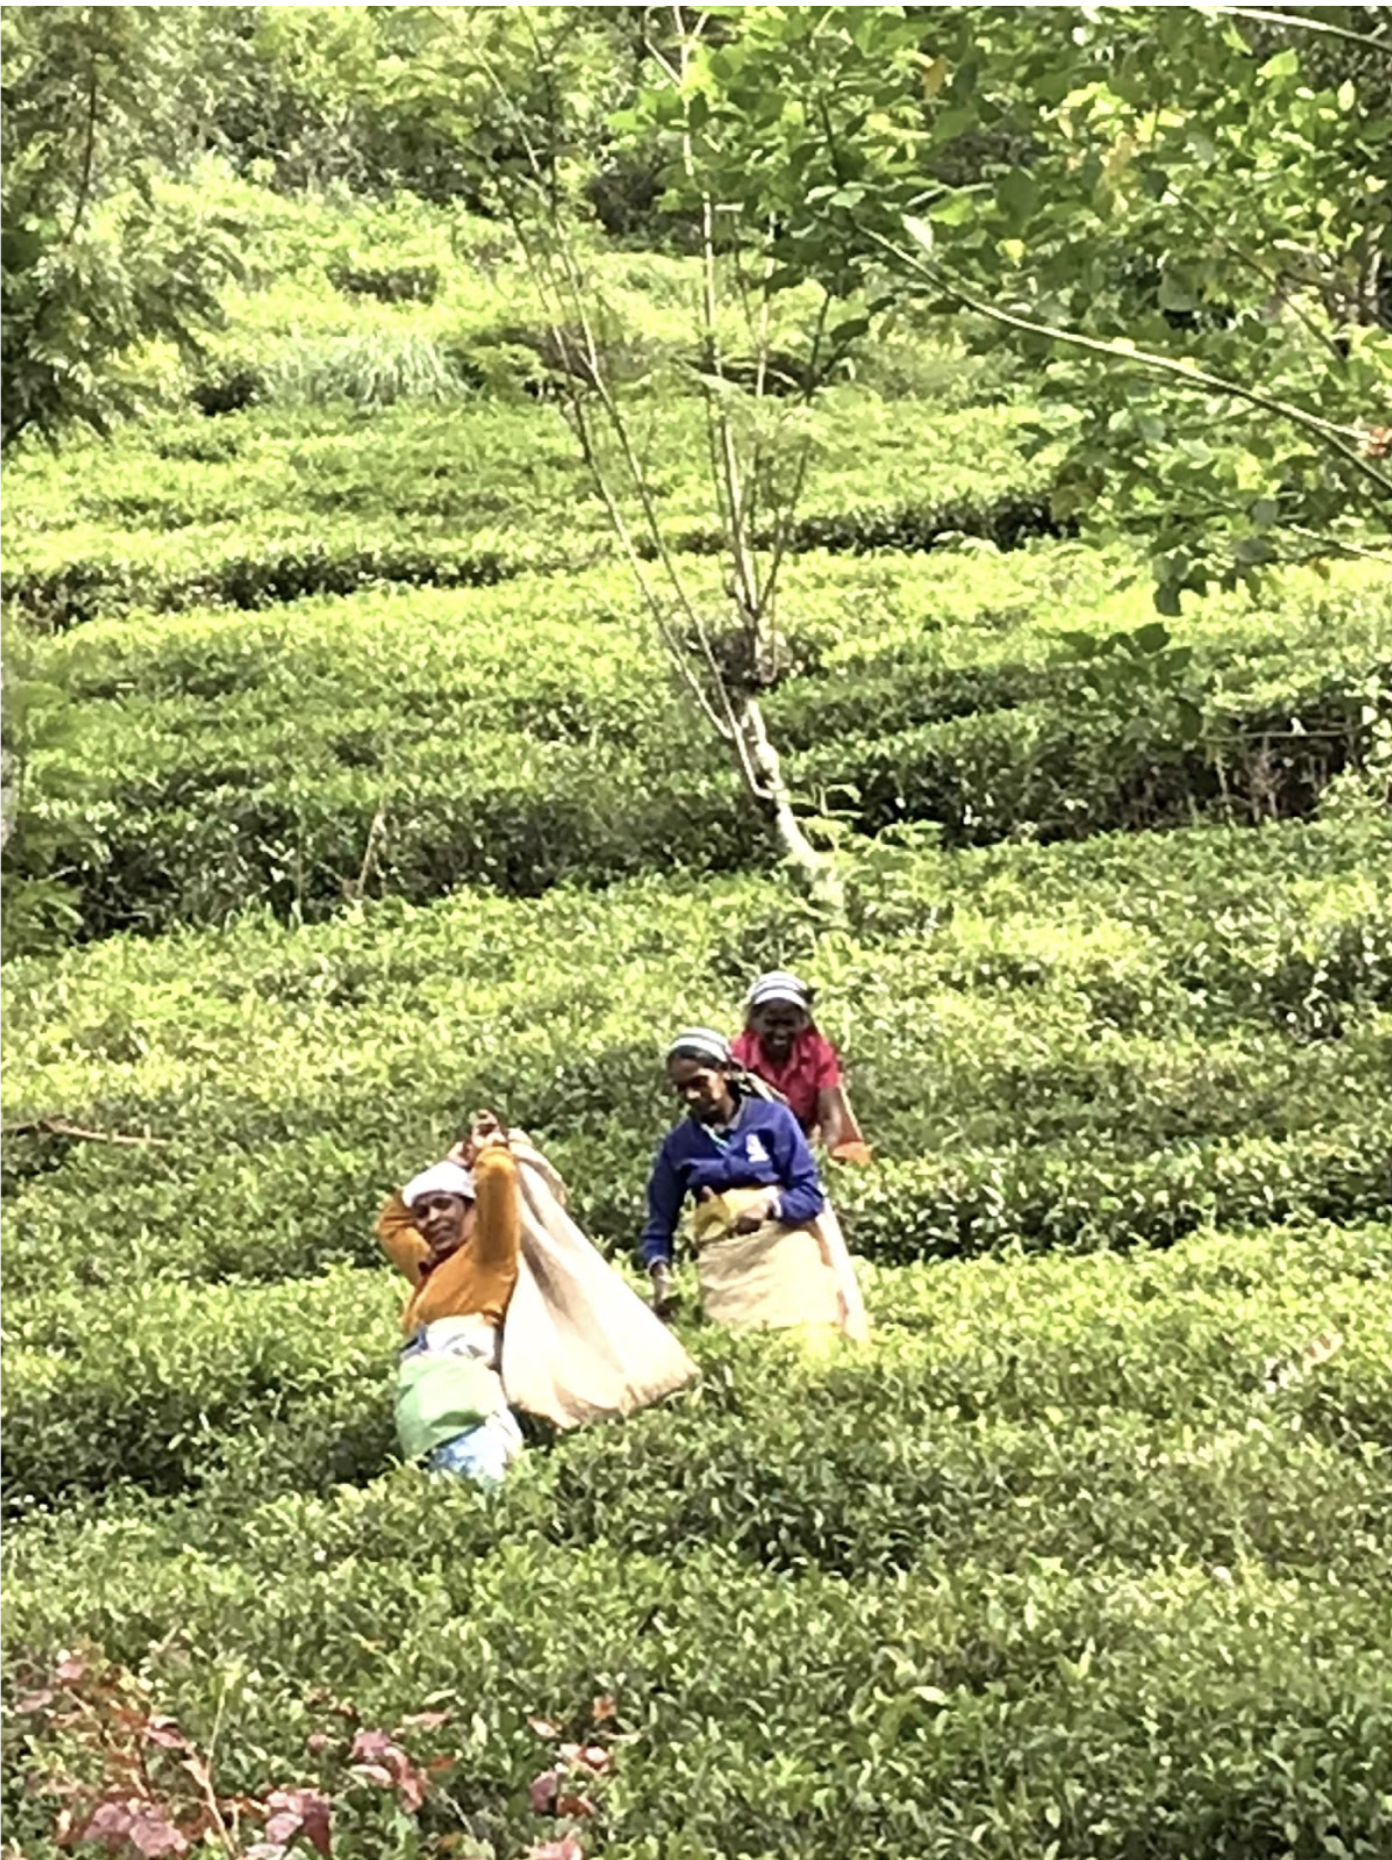 Image of women picking tea in a field